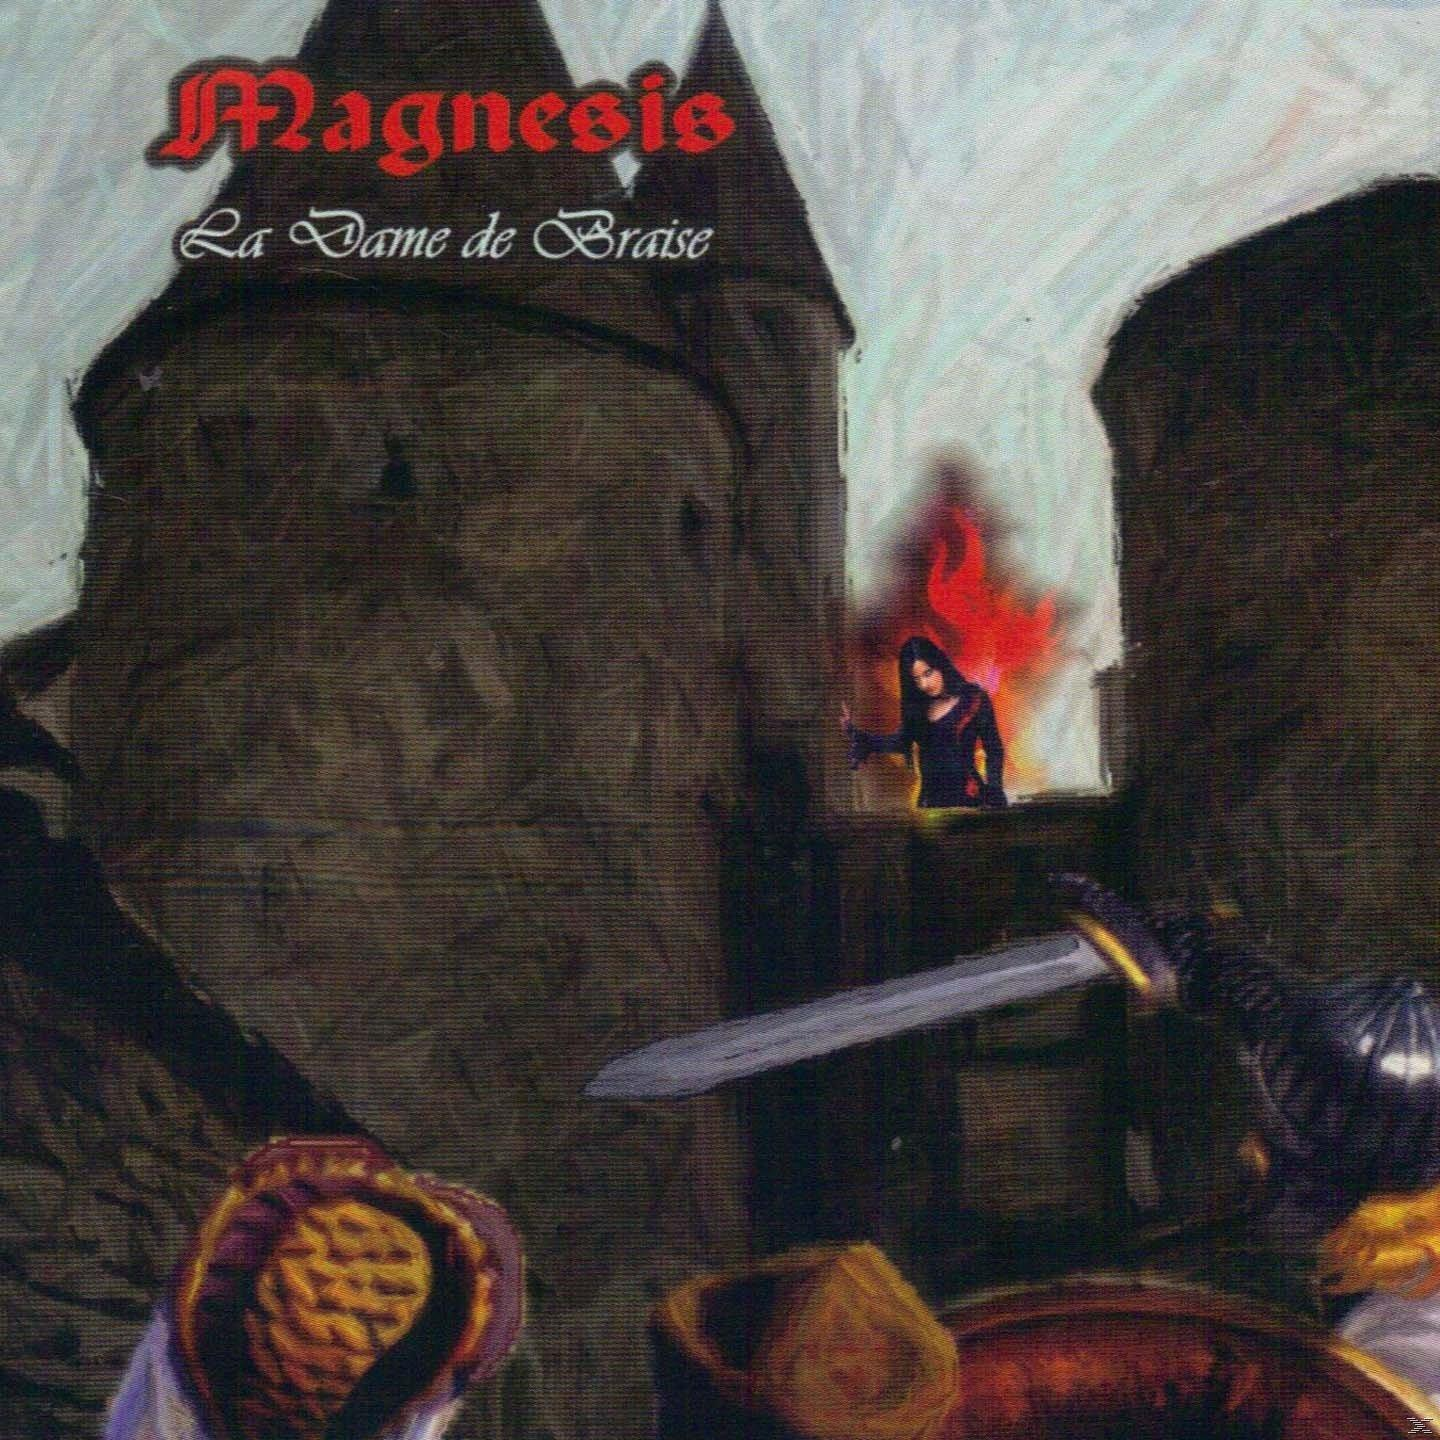 Dame - Braise - (CD) Magnesis de La